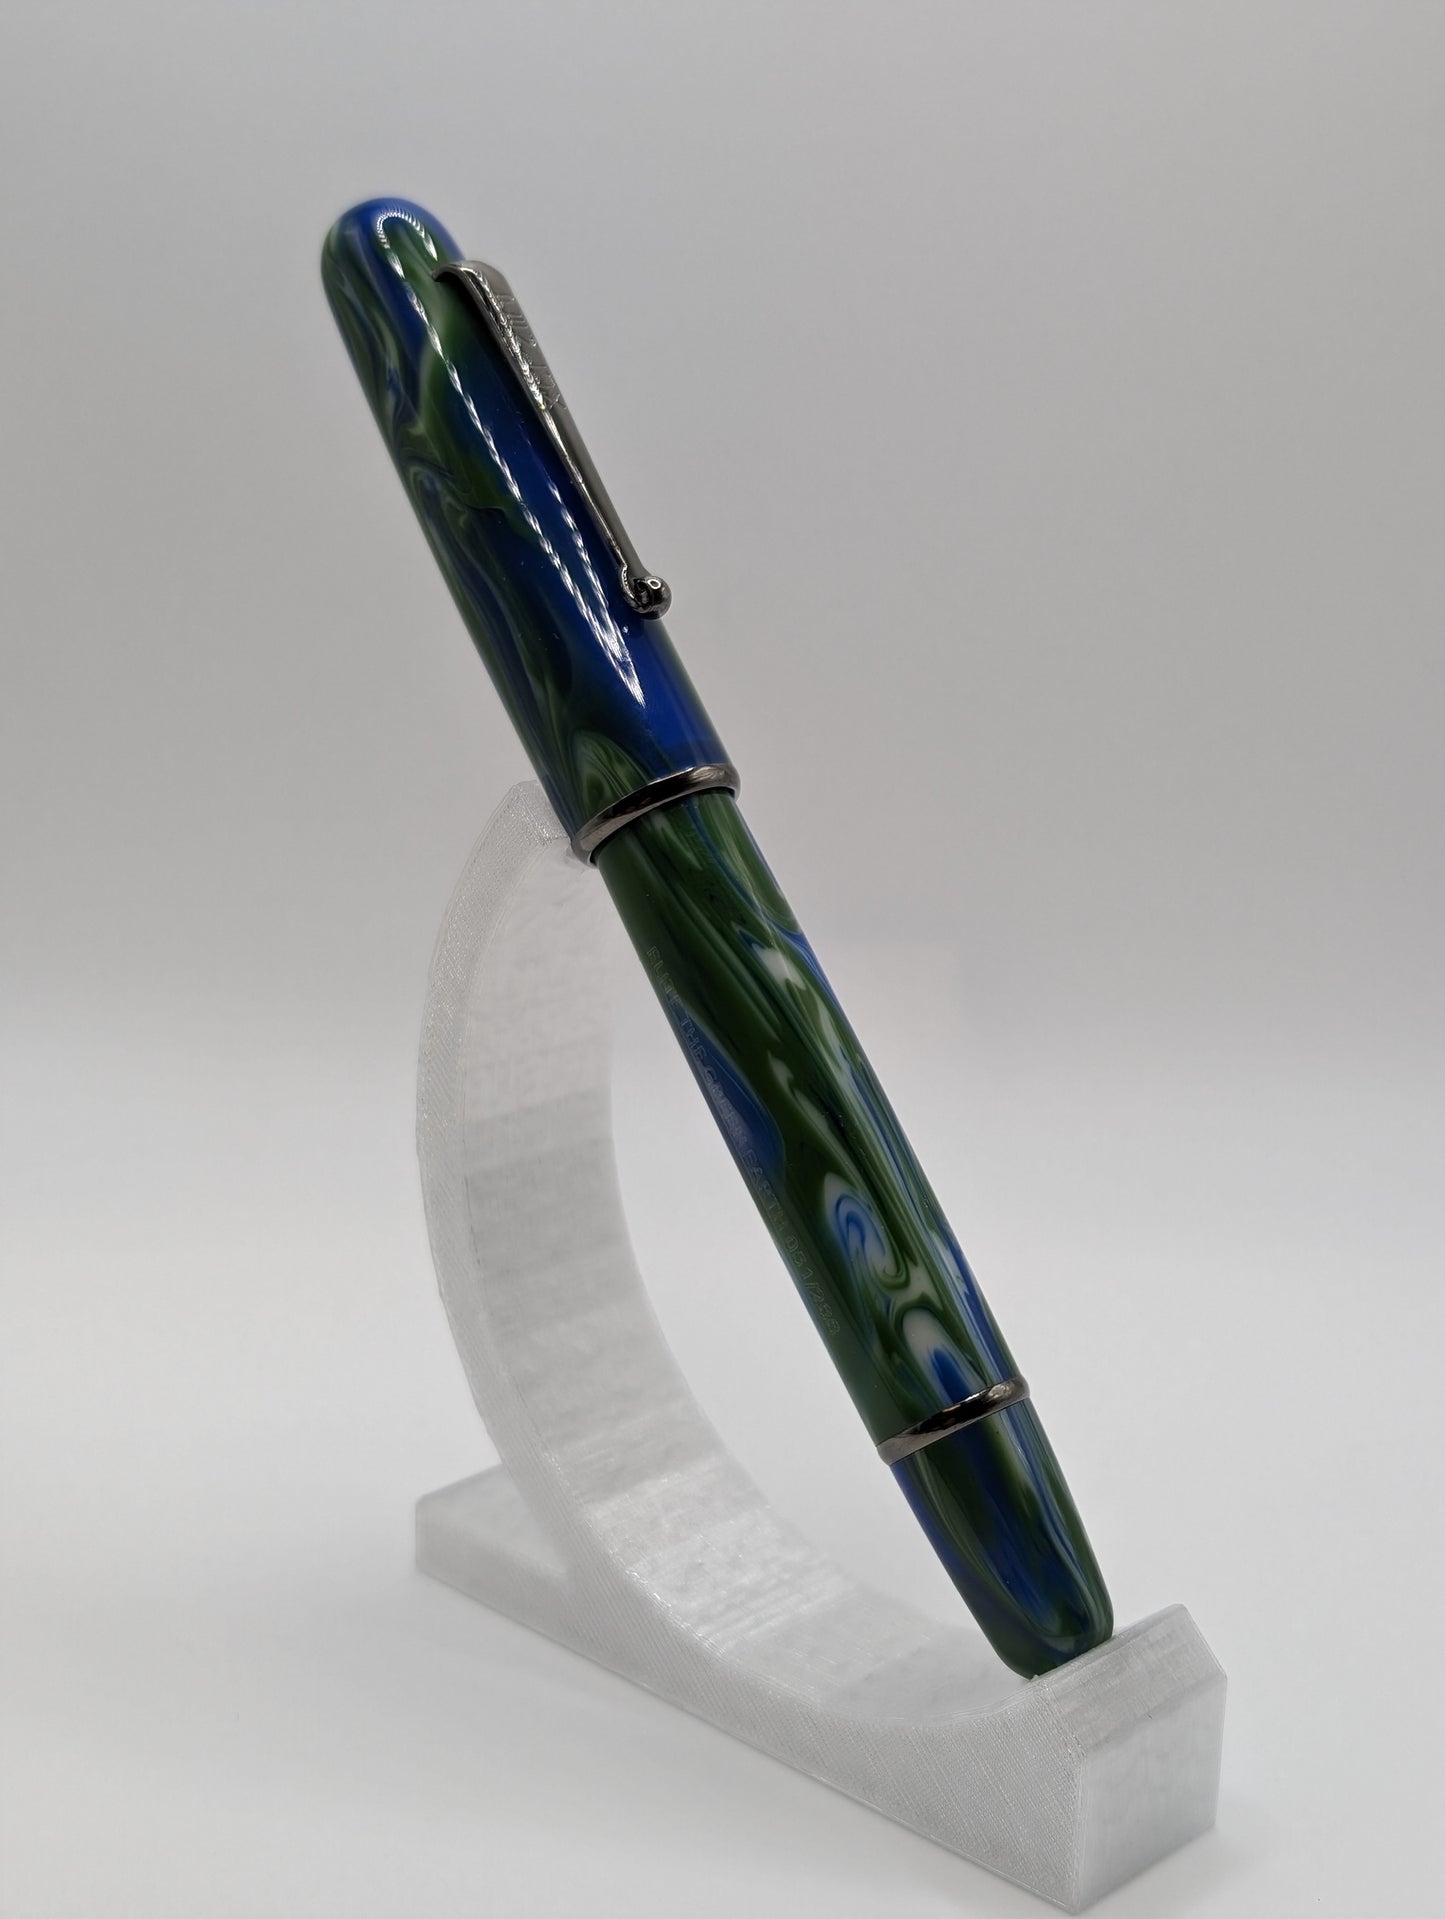 Penlux Delgado Limited Edition "The Green Earth" Elite Fountain Pen